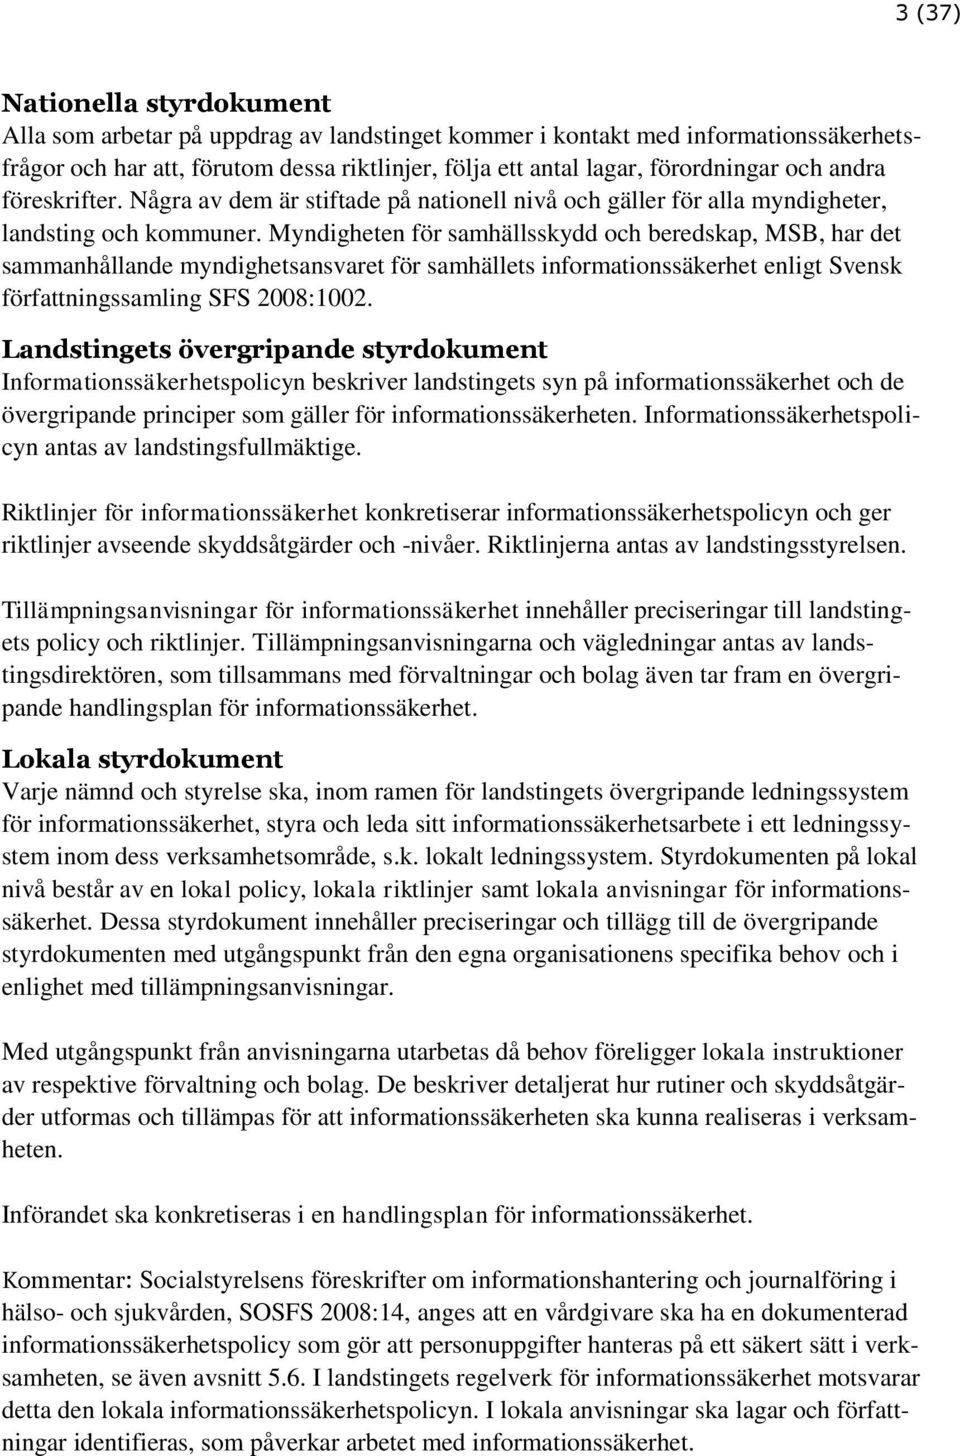 Myndigheten för samhällsskydd och beredskap, MSB, har det sammanhållande myndighetsansvaret för samhällets informationssäkerhet enligt Svensk författningssamling SFS 2008:1002.